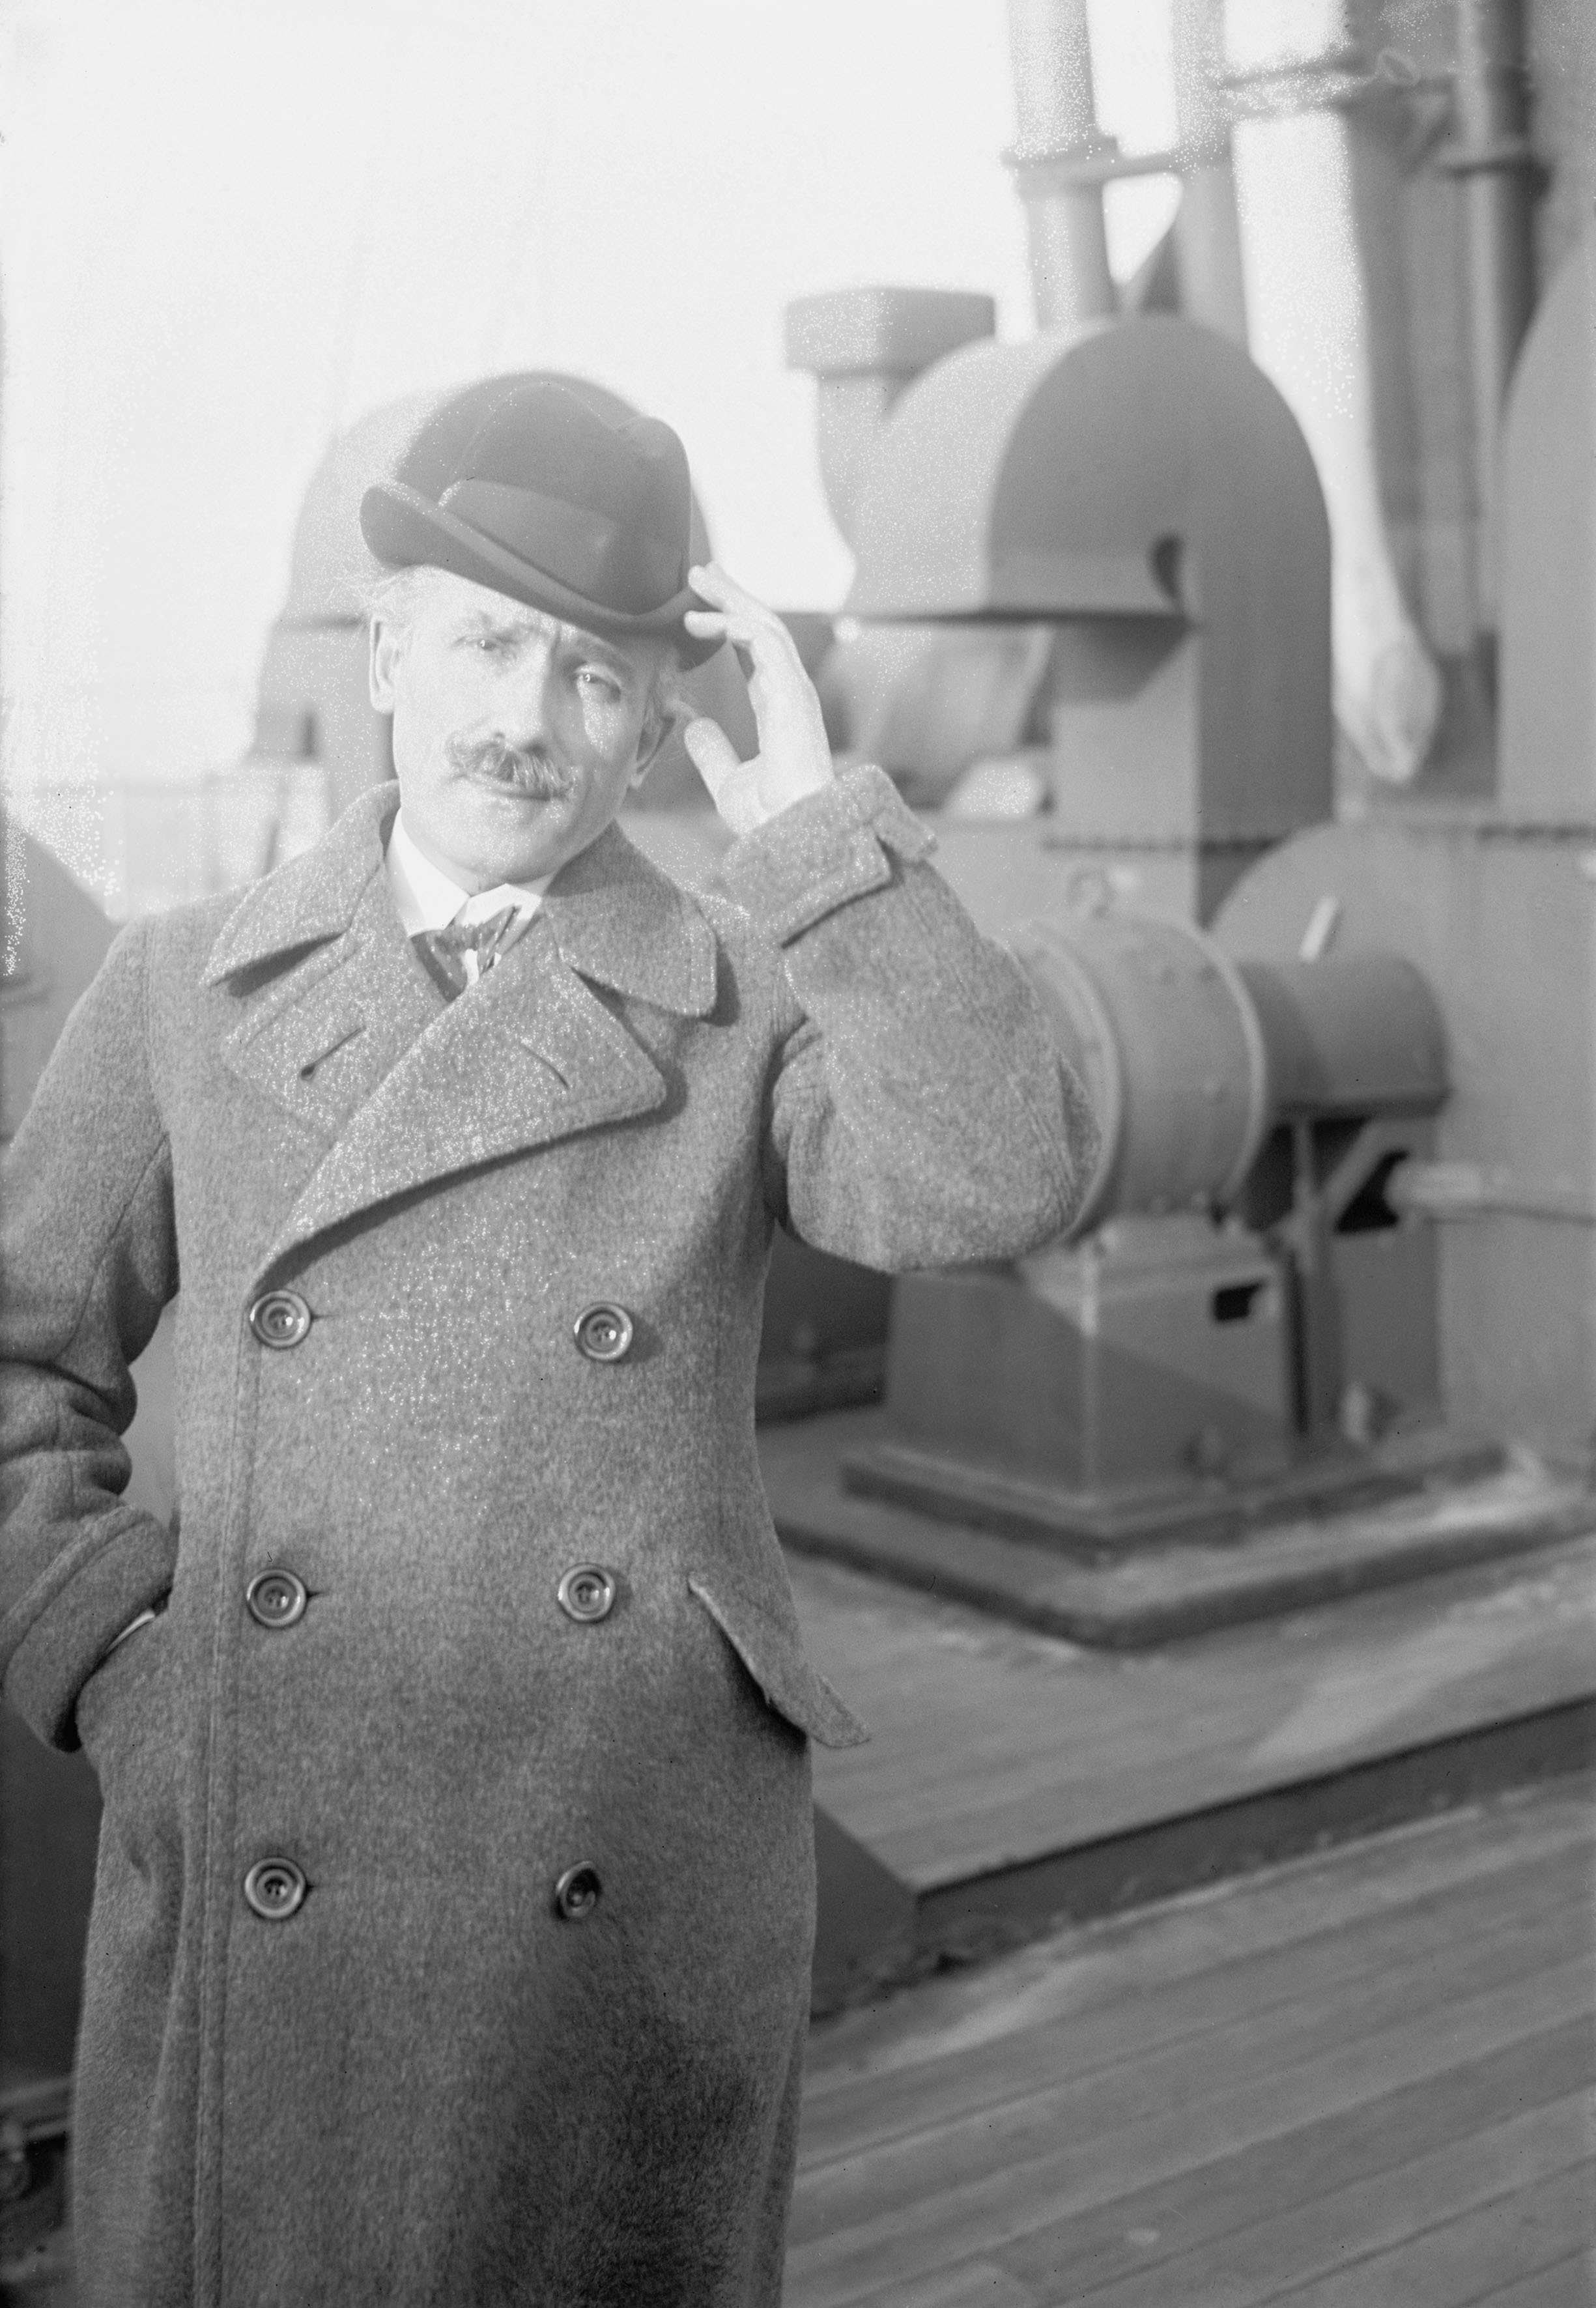 1928. Arturo Toscanini a bordo della nave che lo conduce a New York per una tournée internazionale dell’Orchestra del Teatro alla Scala.